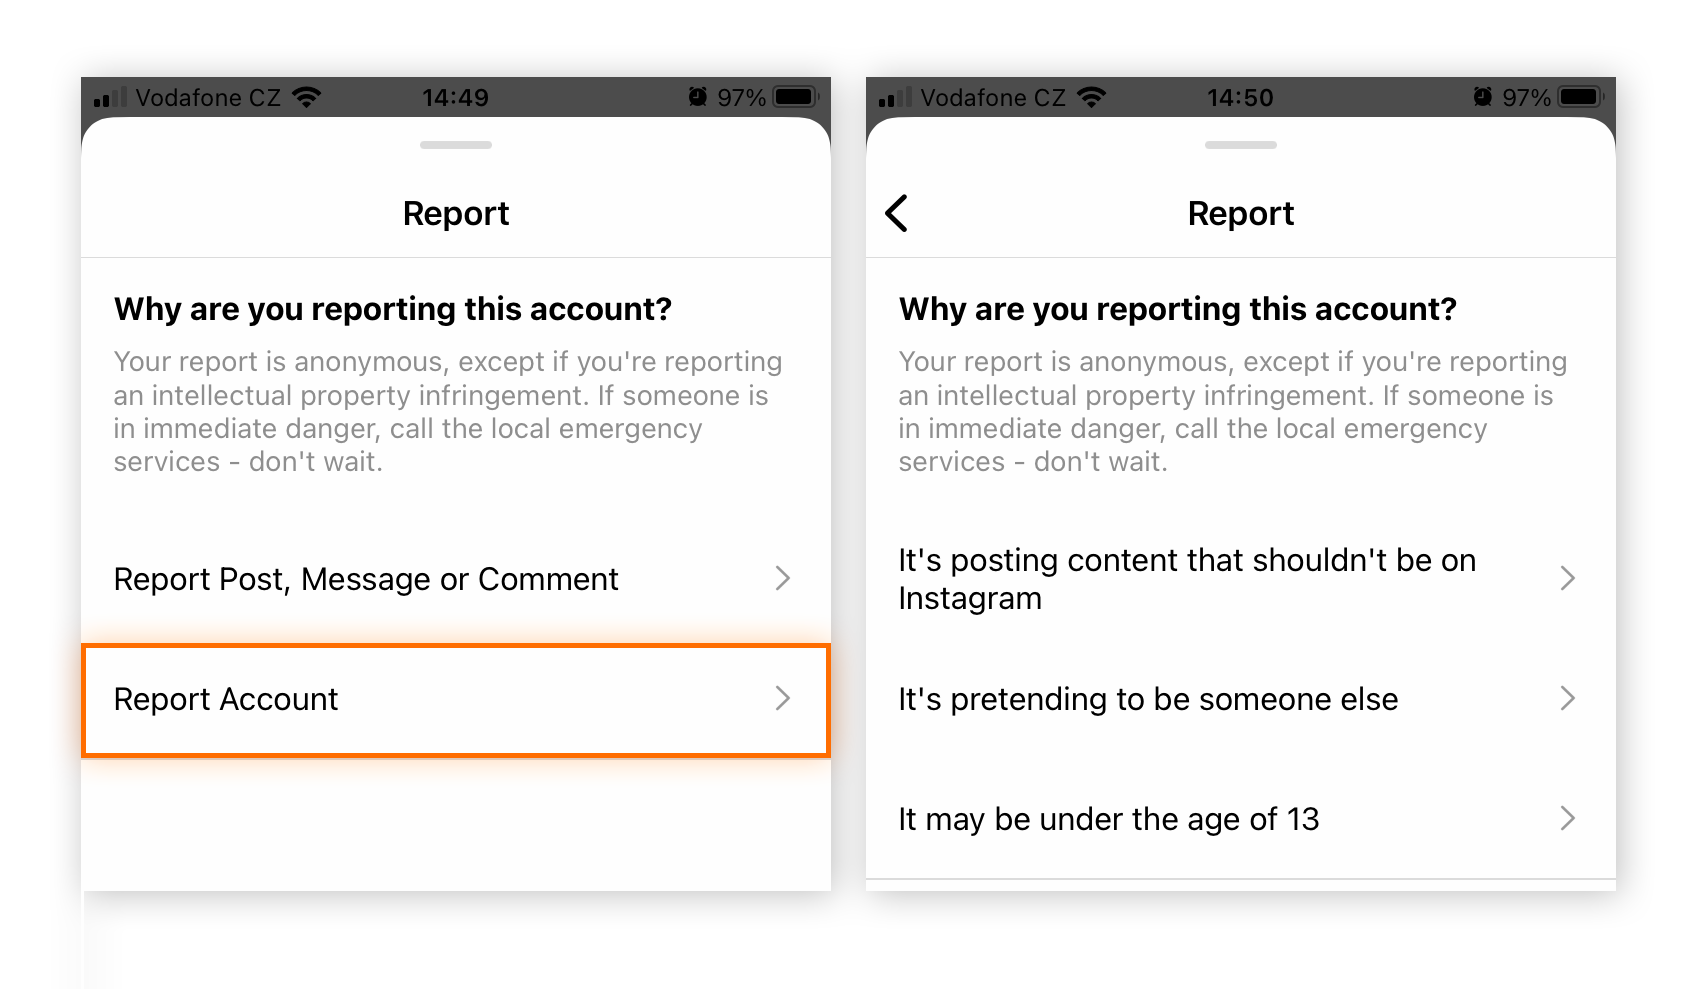 Pour signaler les escrocs sur Instagram, choisissez Signaler le compte > Il usurpe l’identité d’un tiers.